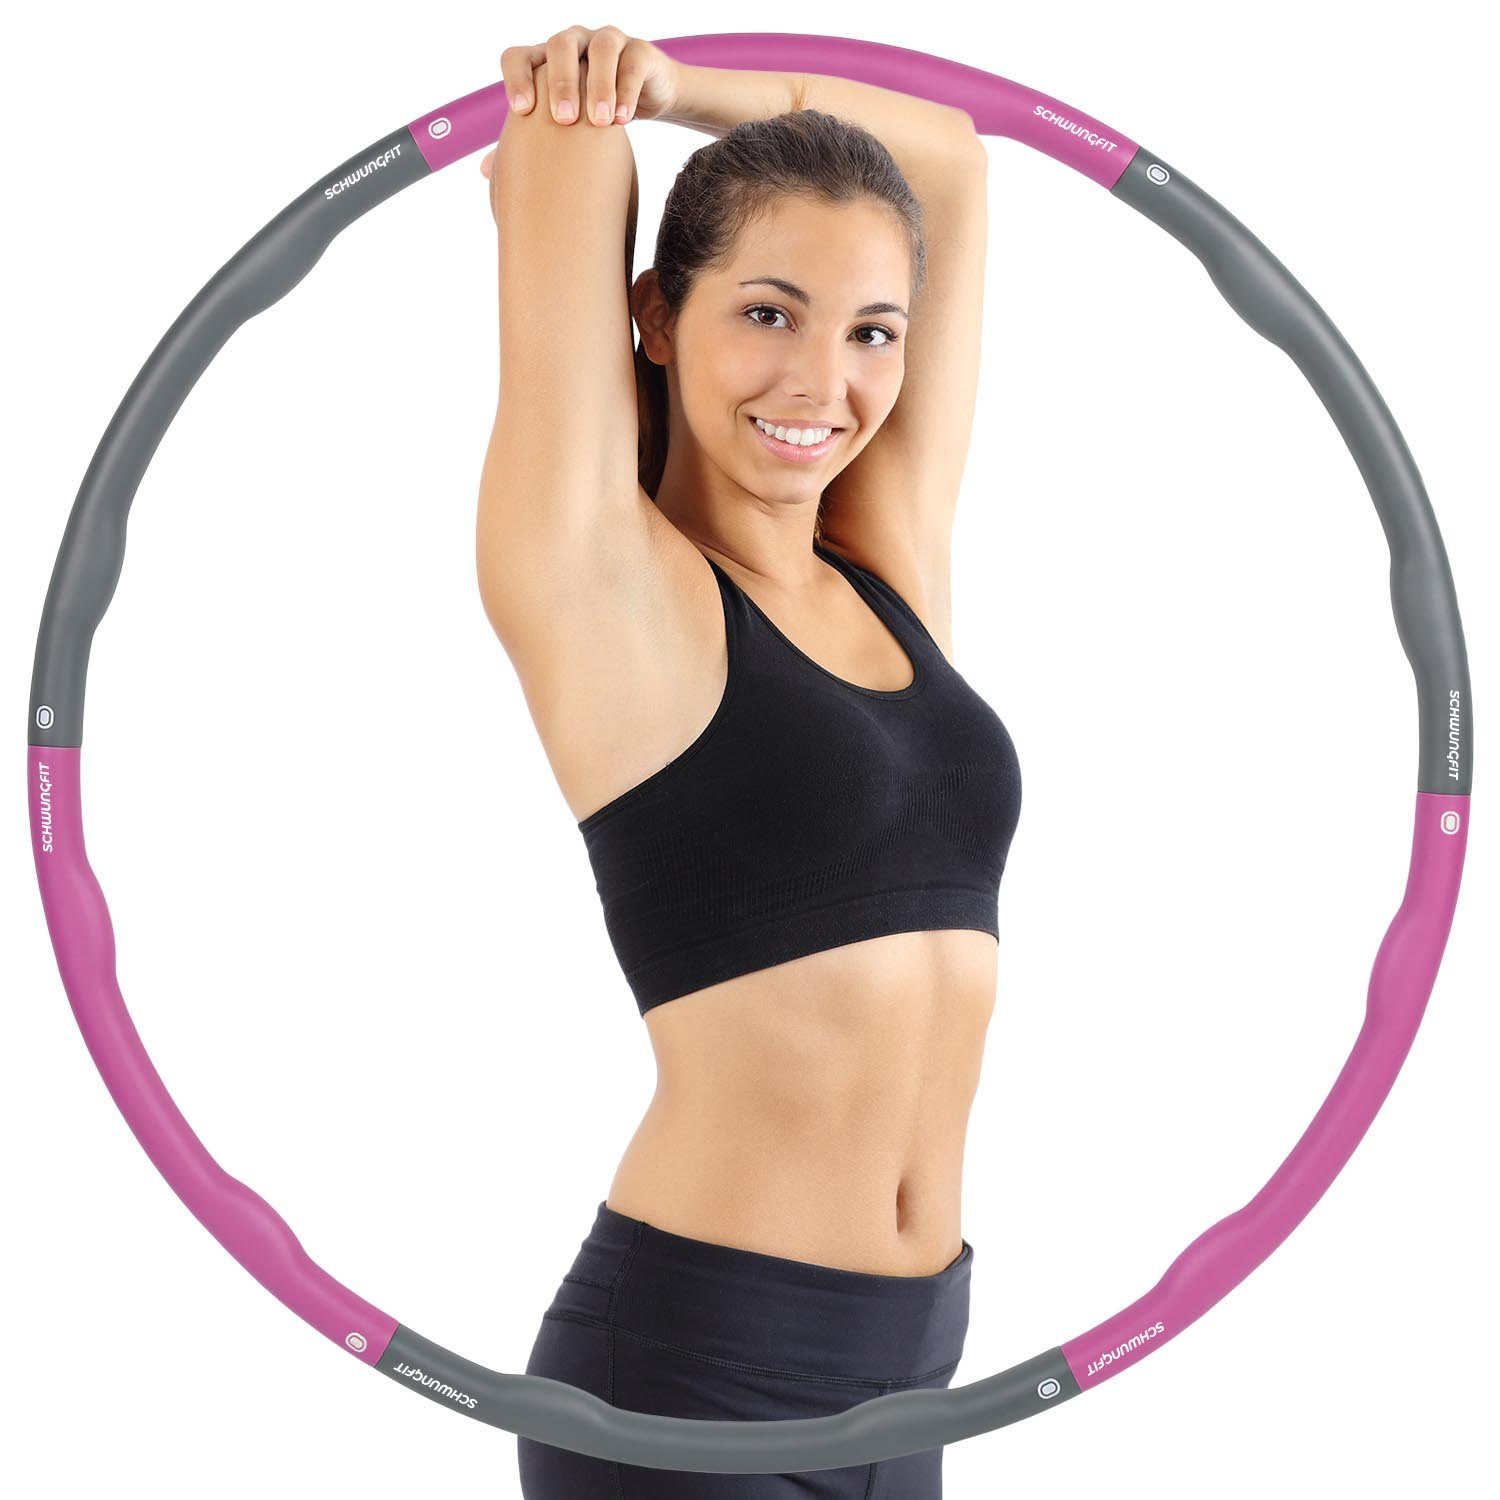 Schwungfit Hula-Hoop-Reifen 1,8 Kg Wellendesign mit 100cm Durchmesser ( Fitness Reifen für Erwachsene und Kinder), Gelenke mit Schaumstoff Polster  & Massagefunktion